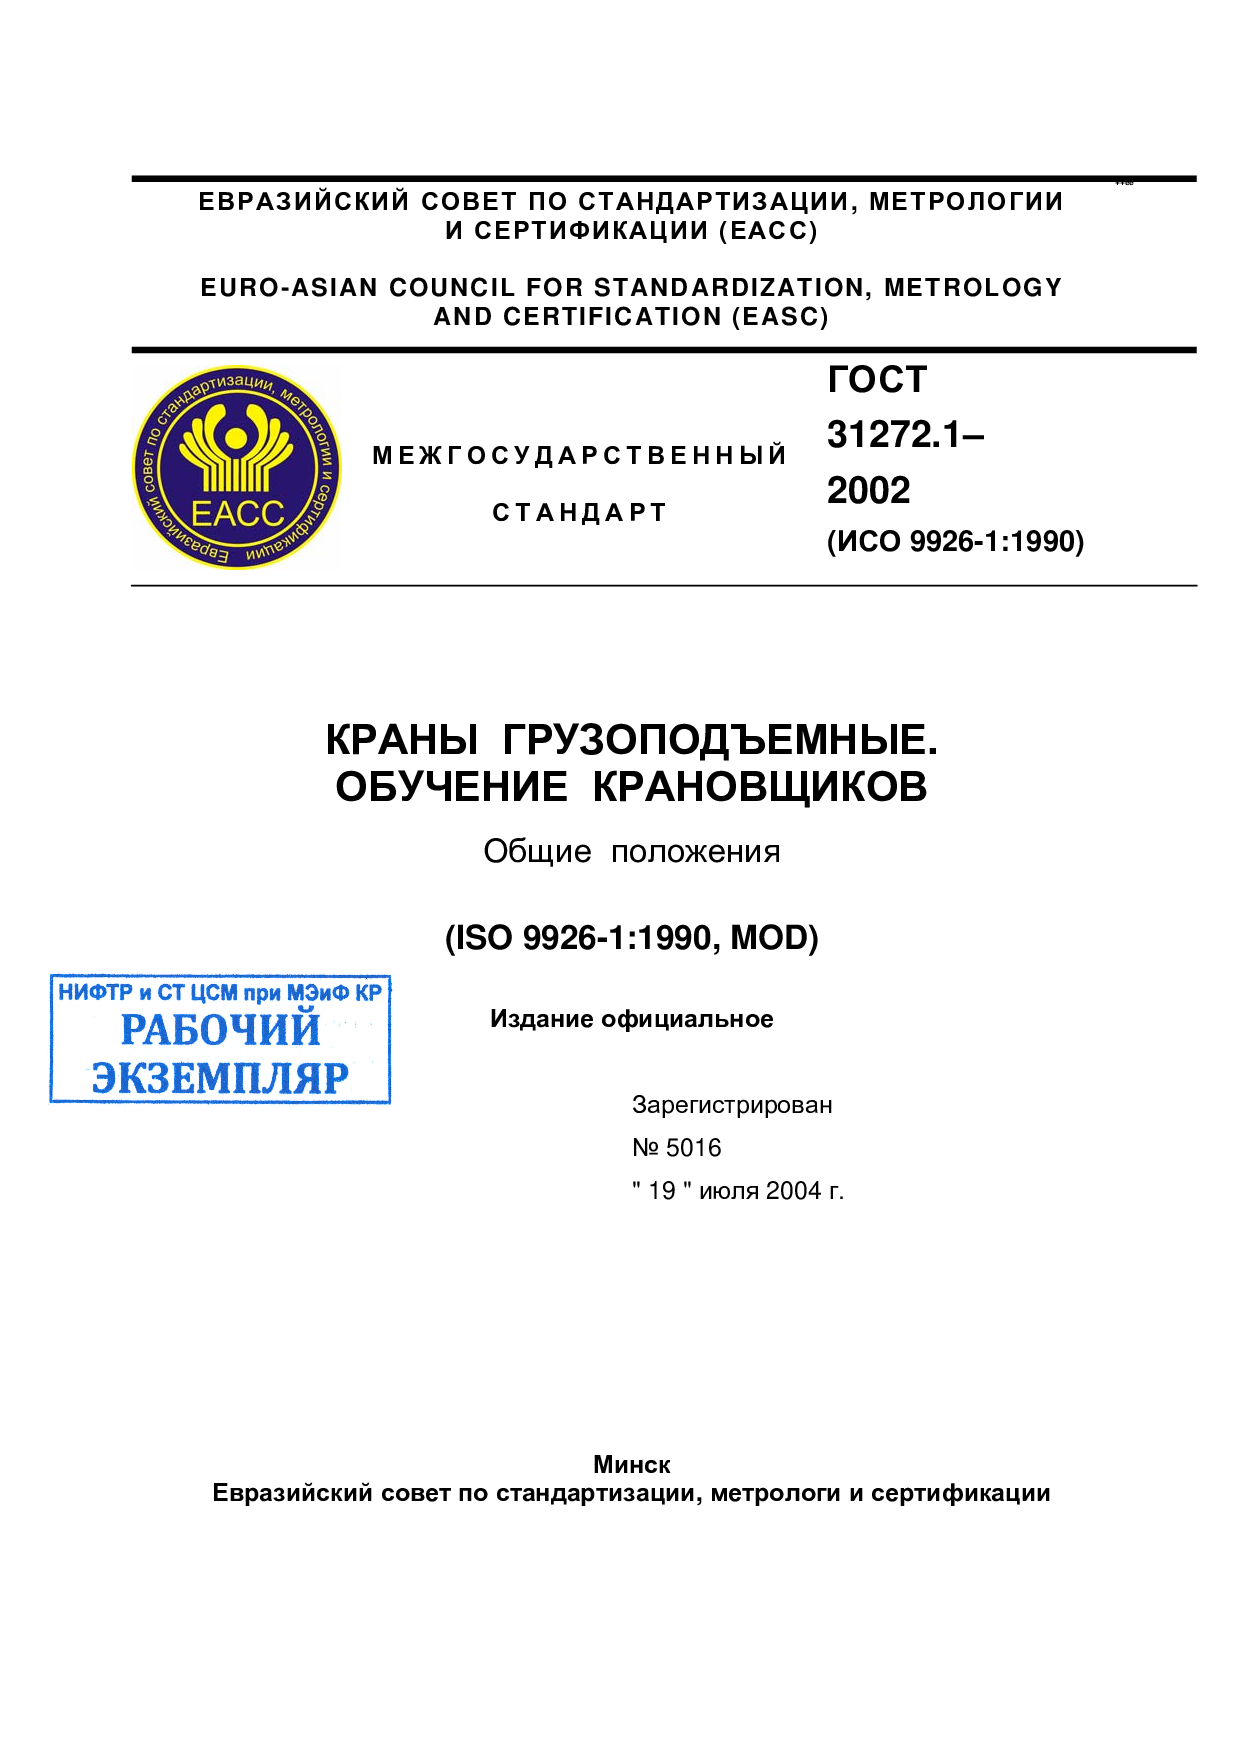 Краны грузоподъемные обучение крановщиков. Общие  положения (ISO 9926-1:1990, MOD)